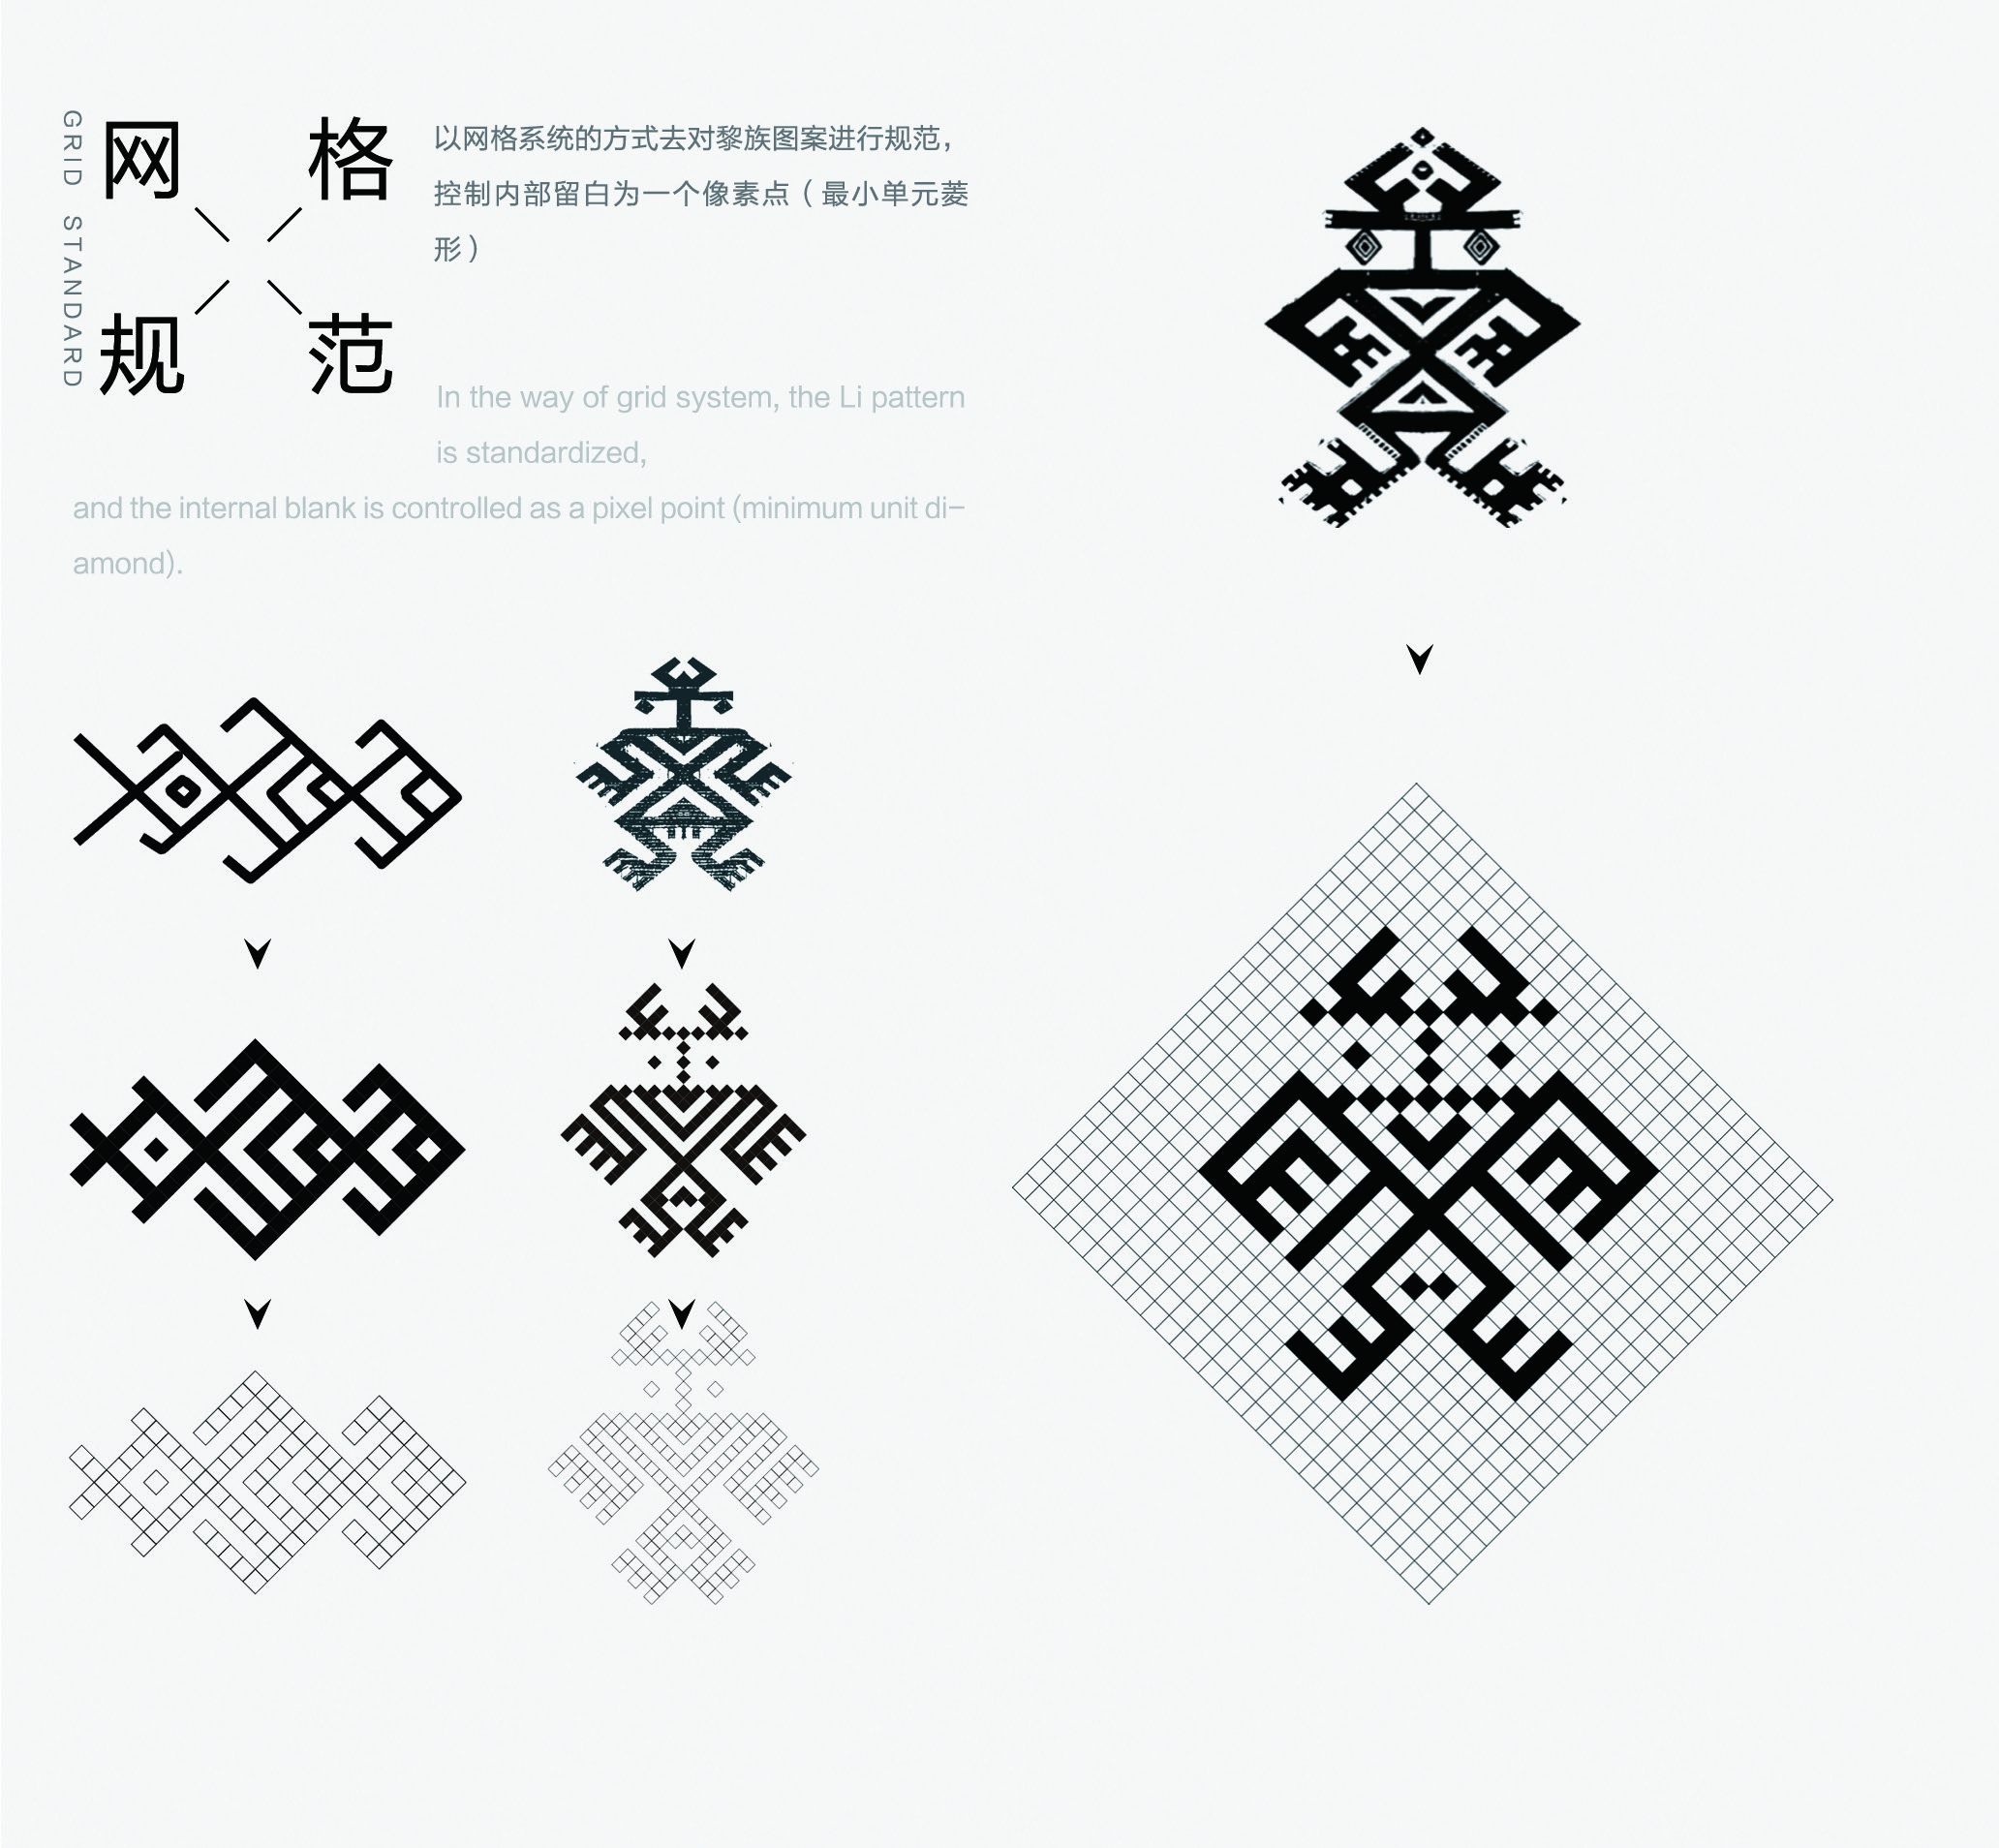 让它看起来像是汉字,实际上写的却是几何造型的黎族纹样,将黎族纹样